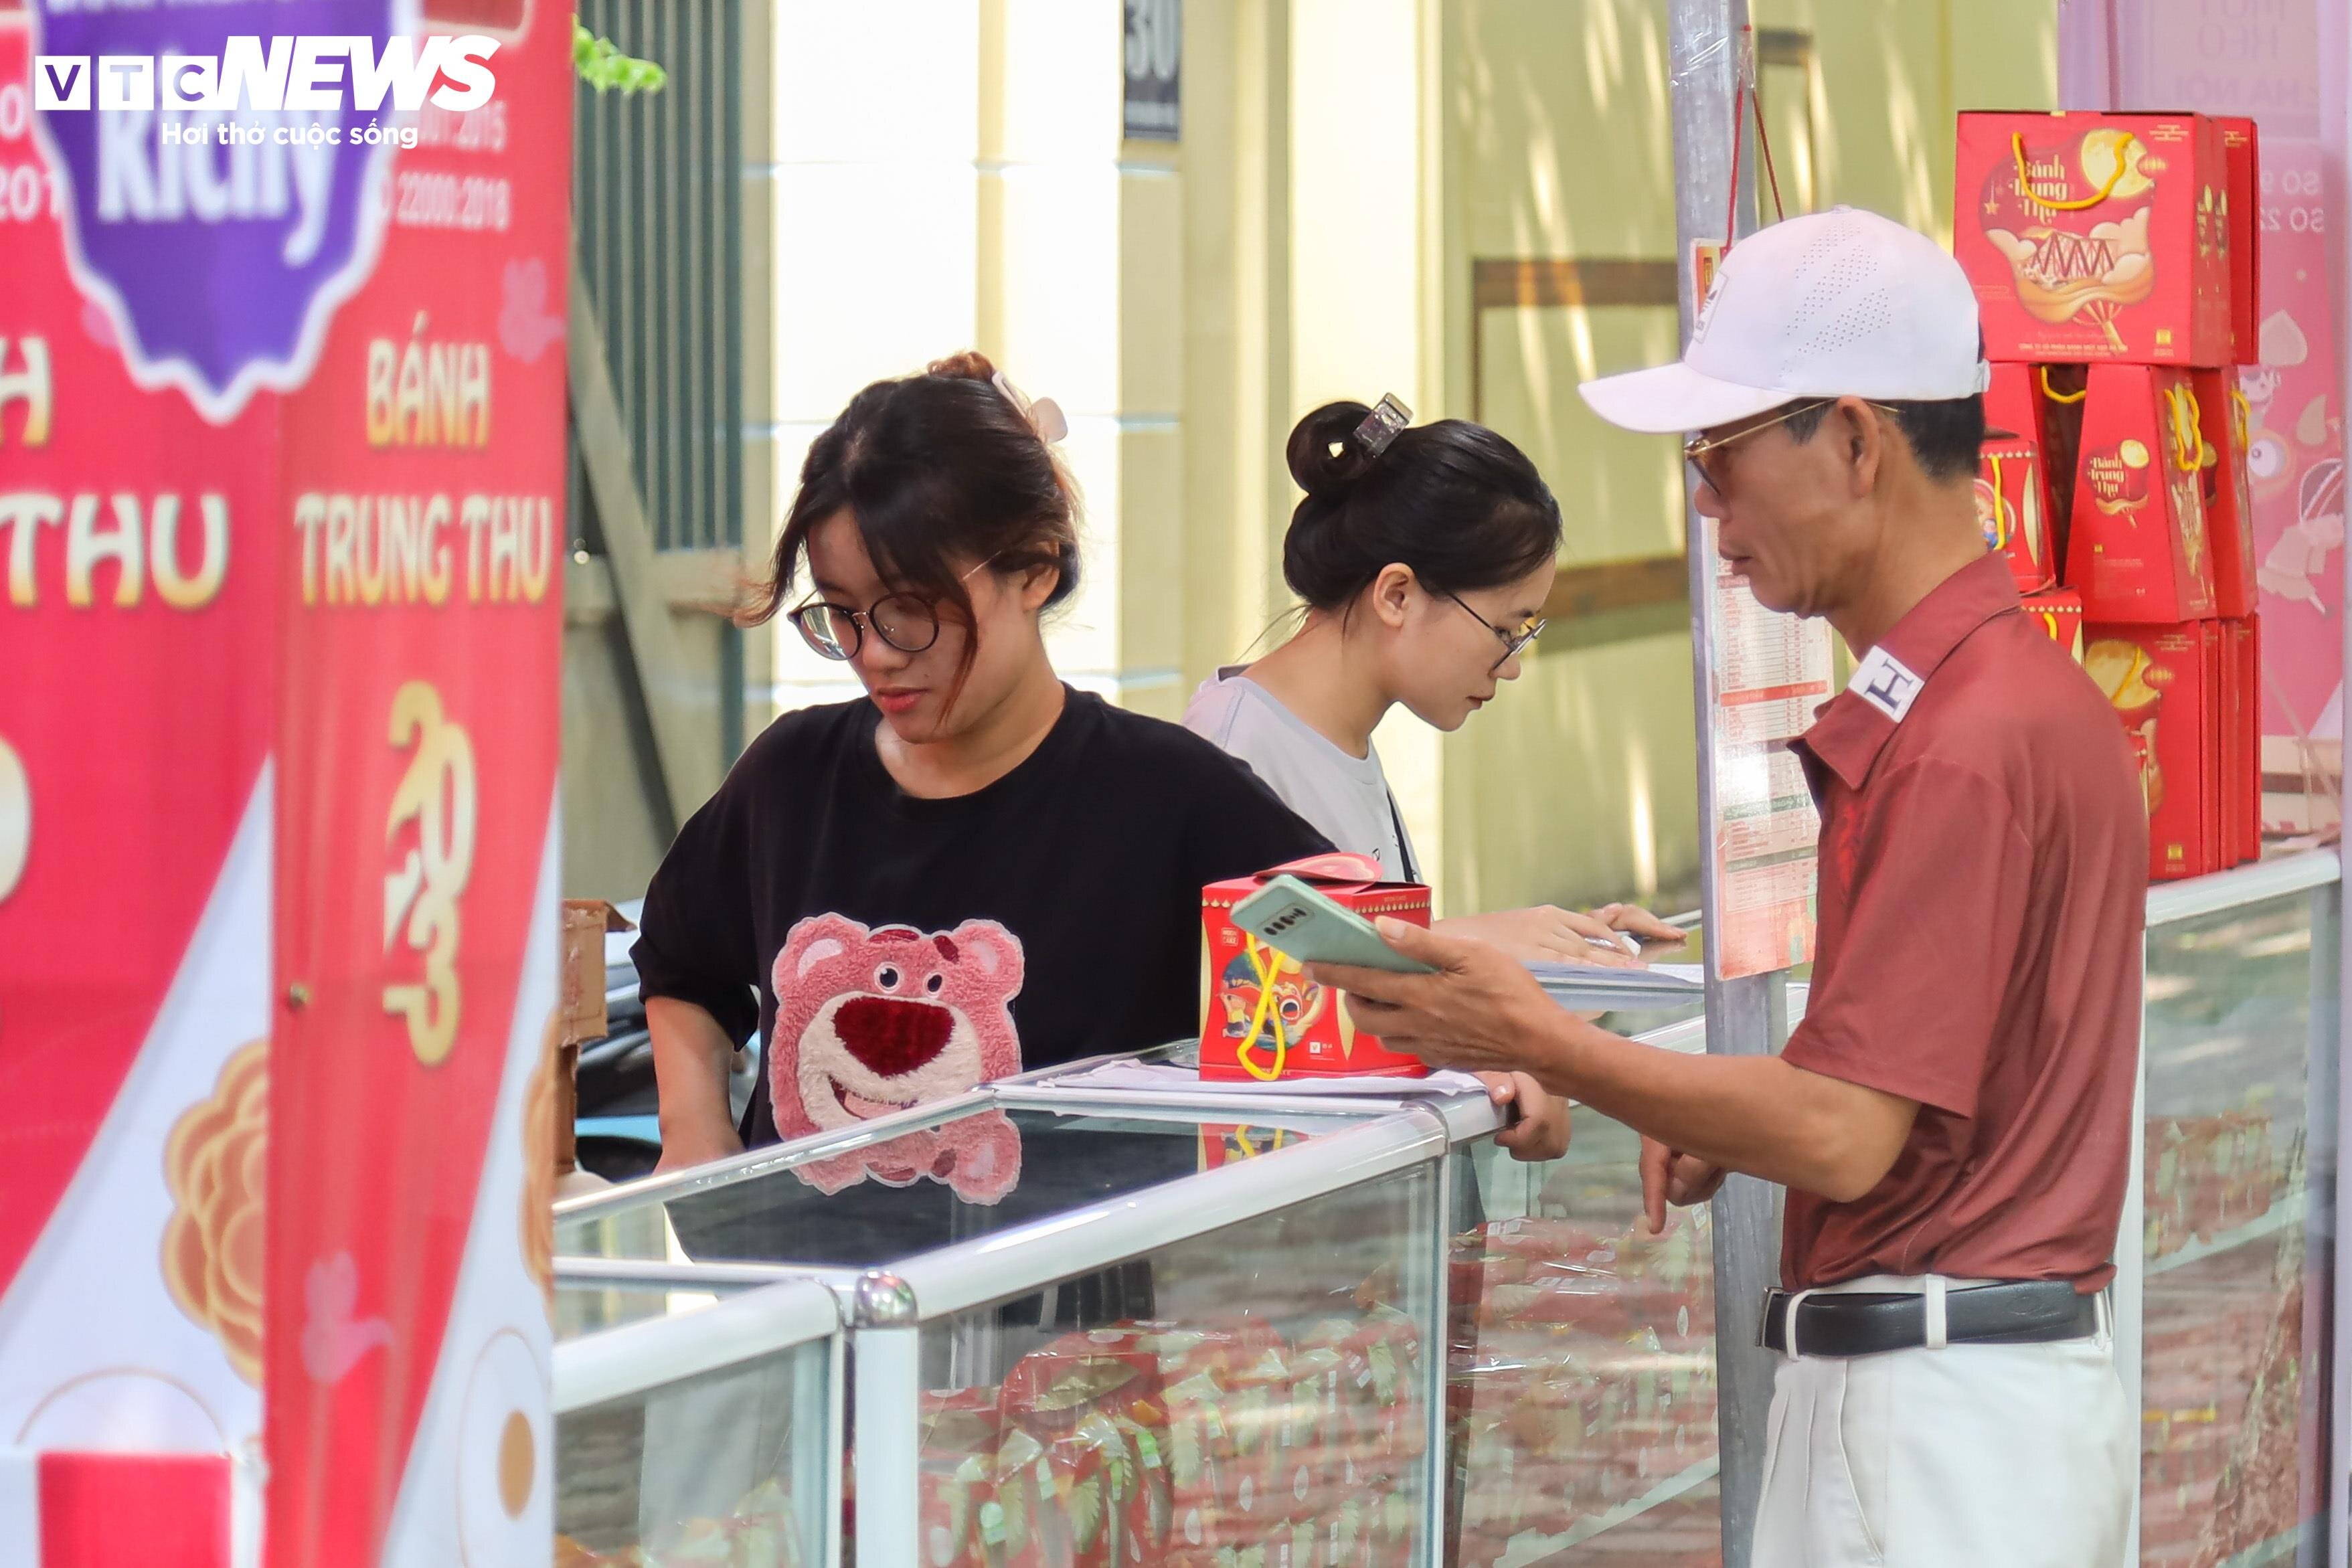 Nhân viên một quầy bánh trên phố Phan Đình Phùng (quận Ba Đình) cho biết dù đã mở bán cả tháng nay nhưng lượng bánh tiêu thụ lại rất chậm, chỉ bằng một nửa so với năm trước. Có thể do năm nay kinh tế khó khăn, nhiều doanh nghiệp cắt giảm quà tặng đối tác nên những hộp bánh cao cấp cũng không bán được nhiều.